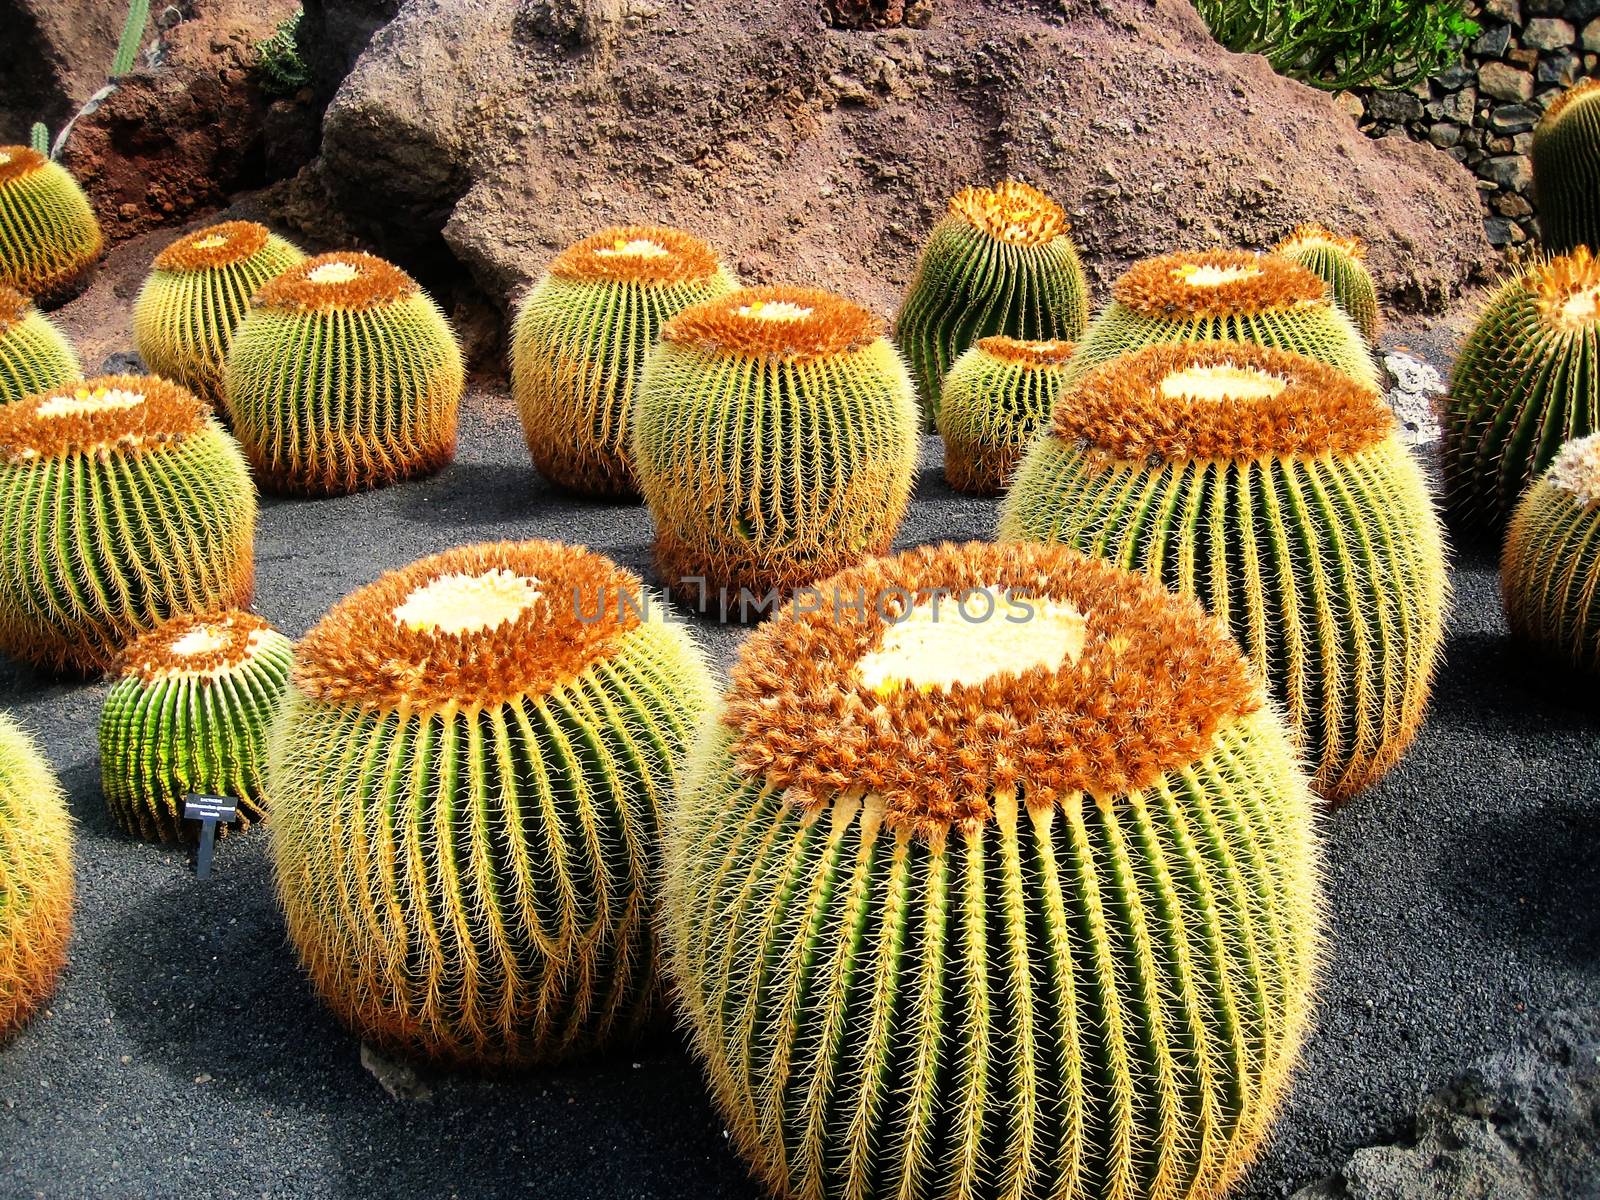 Golden Barrel Cactus by jmubalde